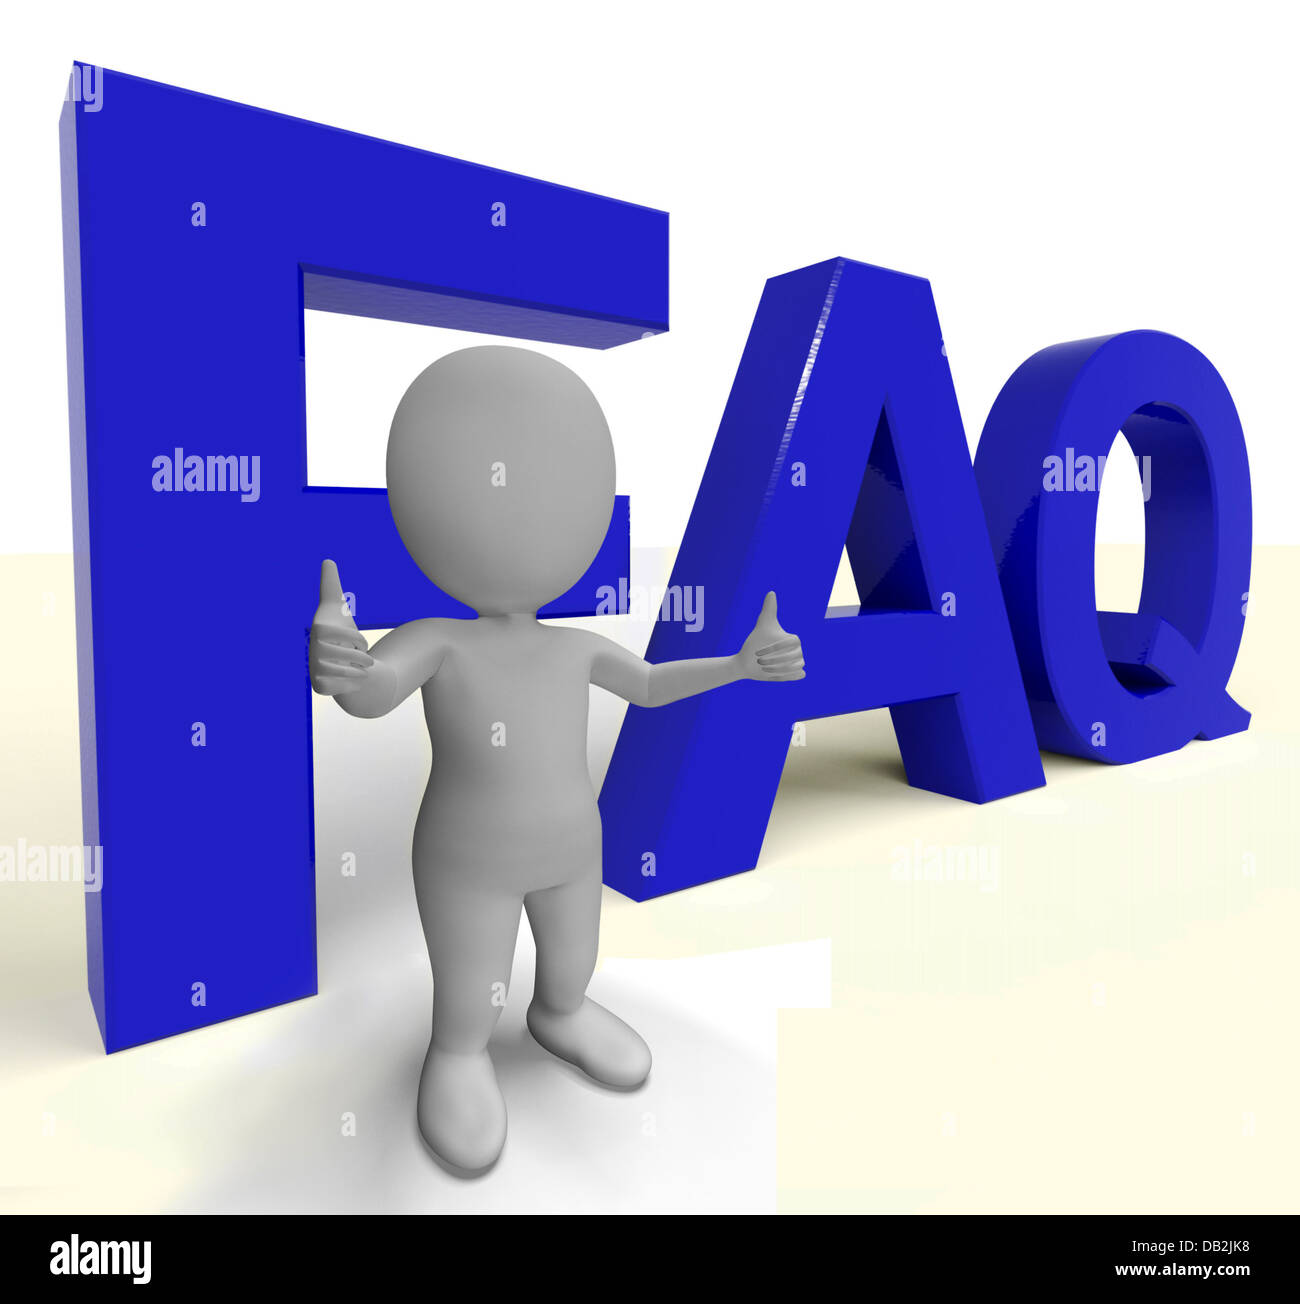 Faq mot comme signe d'information ou d'aide Banque D'Images